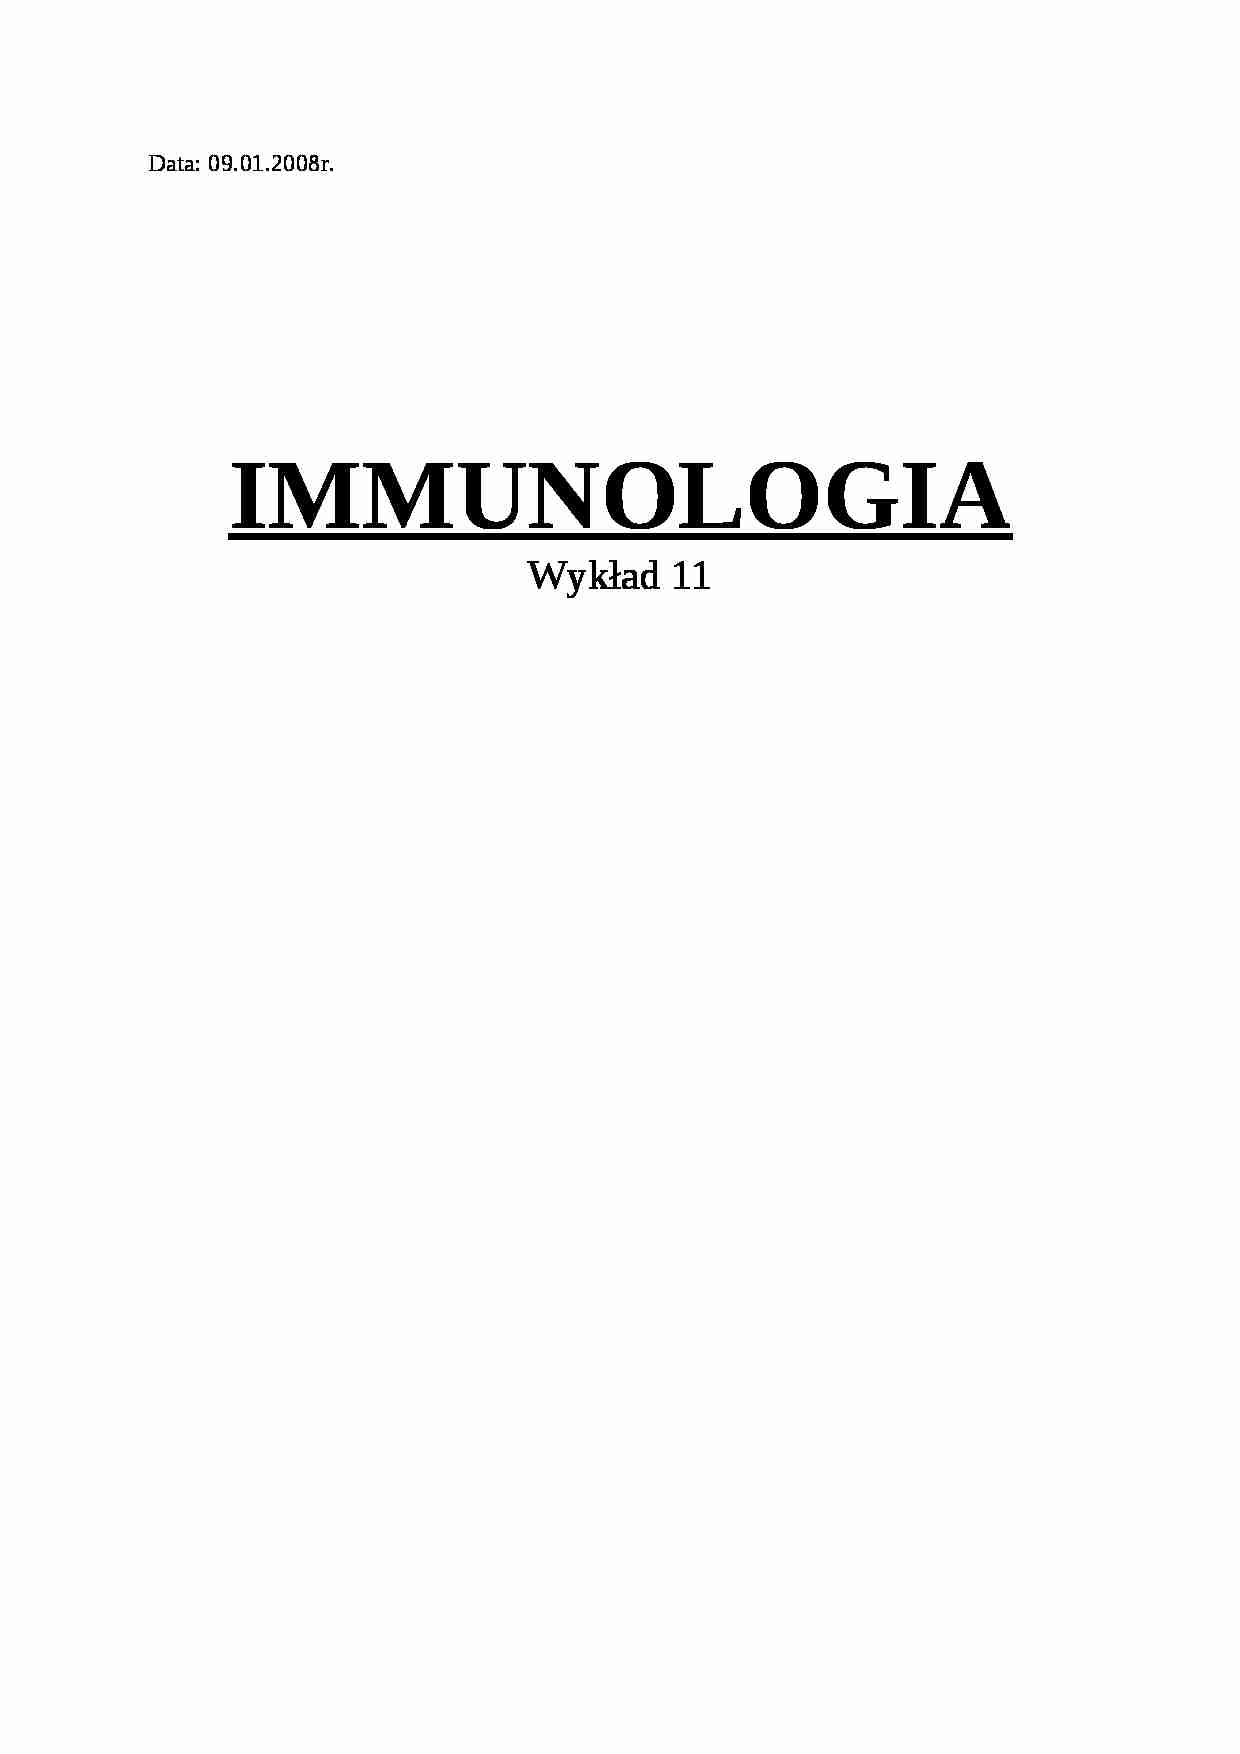 Immunologia - wykład 11 - strona 1